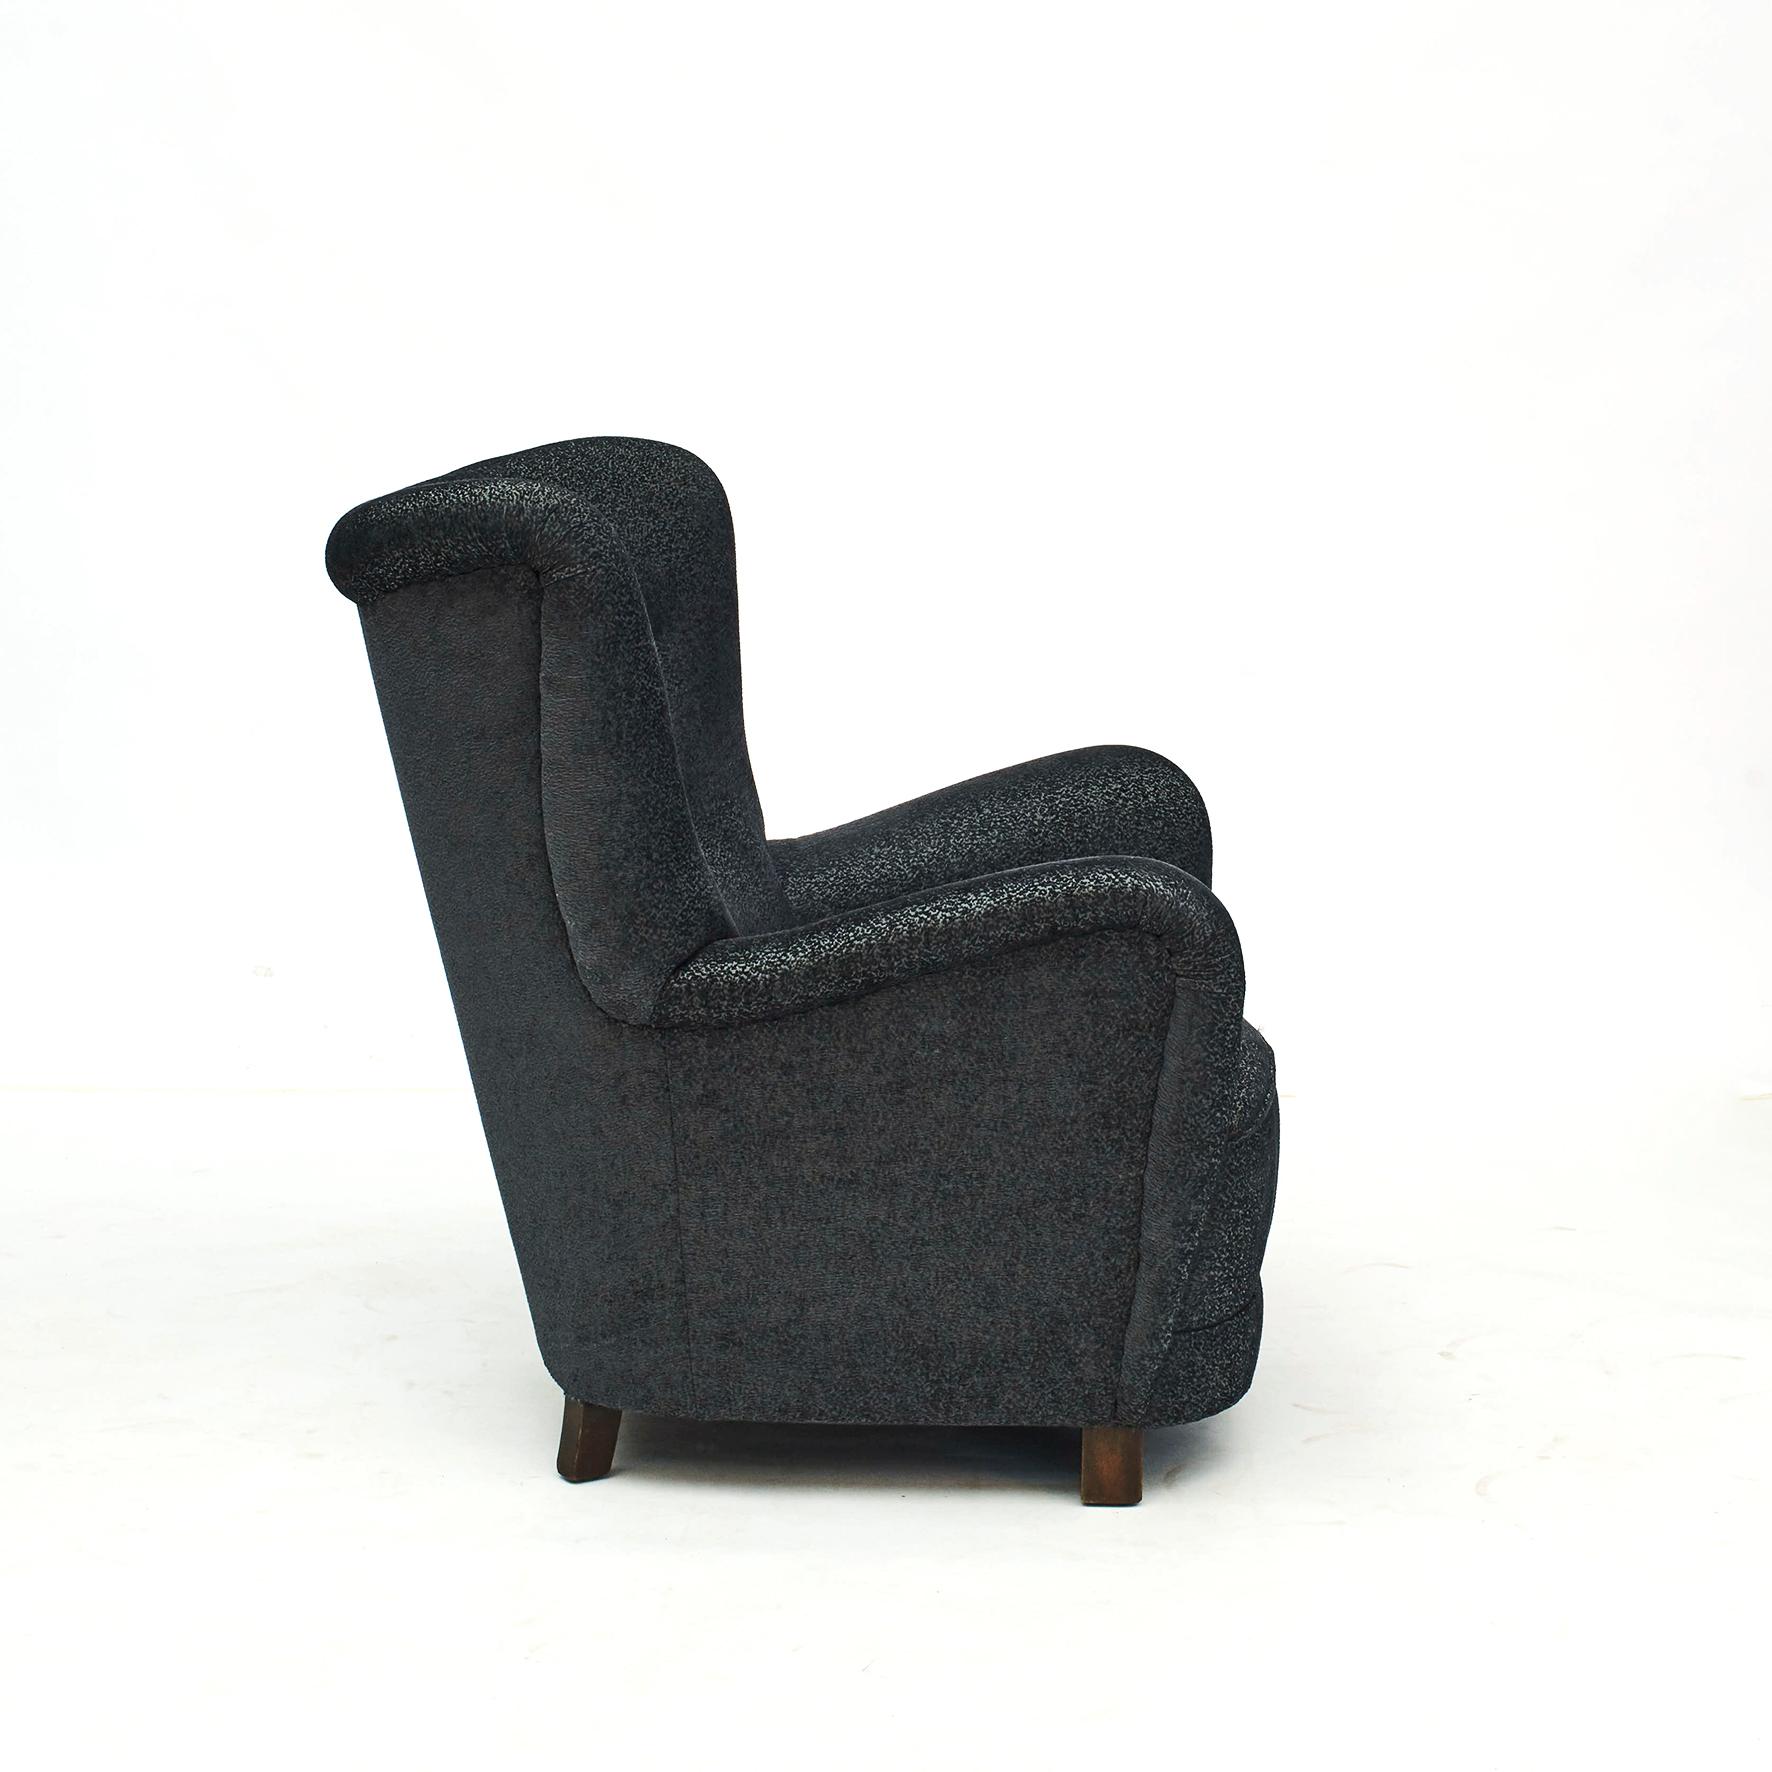 Dänischer Sessel, 1940-1950.
Der Sitz mit Spiralfedern, die Beine aus dunkel polierter Buche.
Professionell neu gepolstert mit schönem bleigrauem Stoff von Larsen.

Sehr bequem und in gutem Zustand.